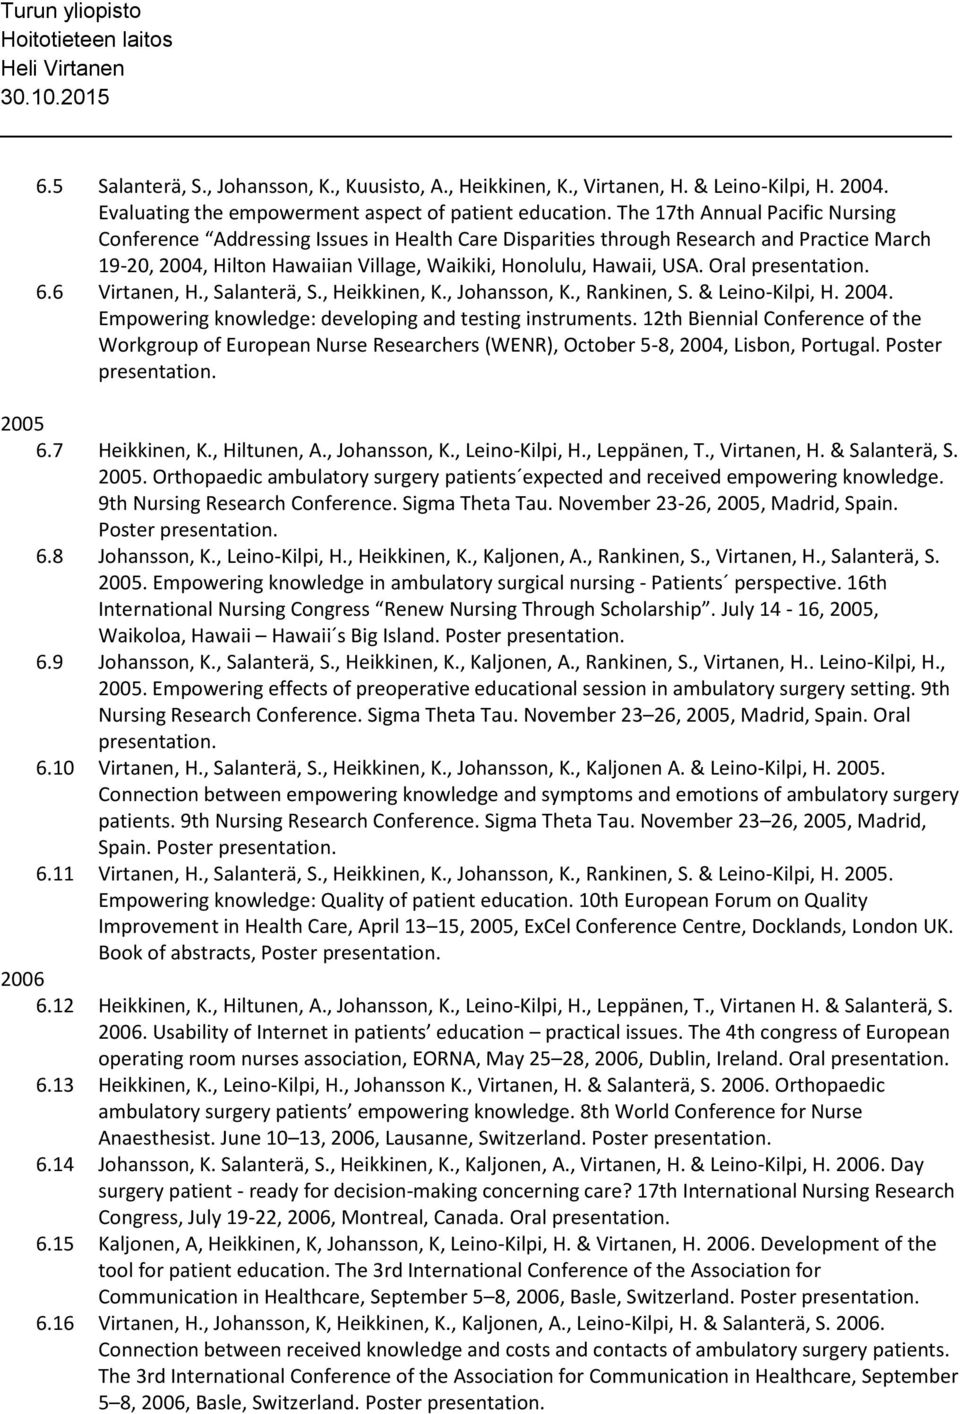 Oral 6.6 Virtanen, H., Salanterä, S., Heikkinen, K., Johansson, K., Rankinen, S. & Leino-Kilpi, H. 2004. Empowering knowledge: developing and testing instruments.